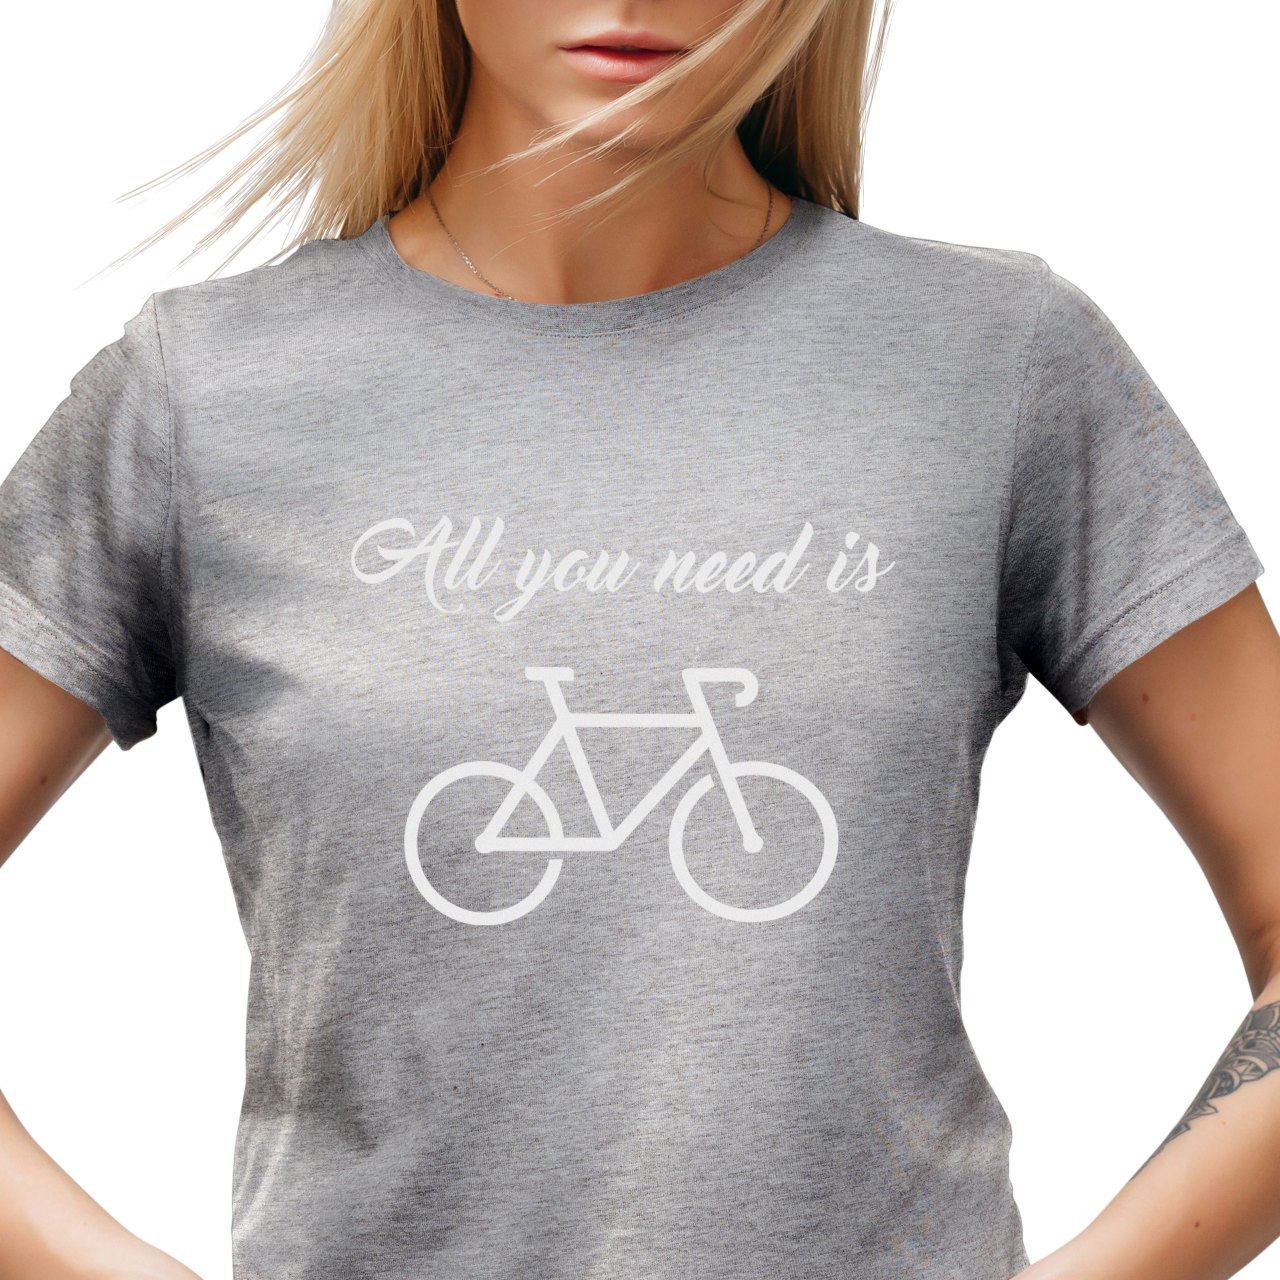 Dámské tričko s potiskem "All you need is Bike"